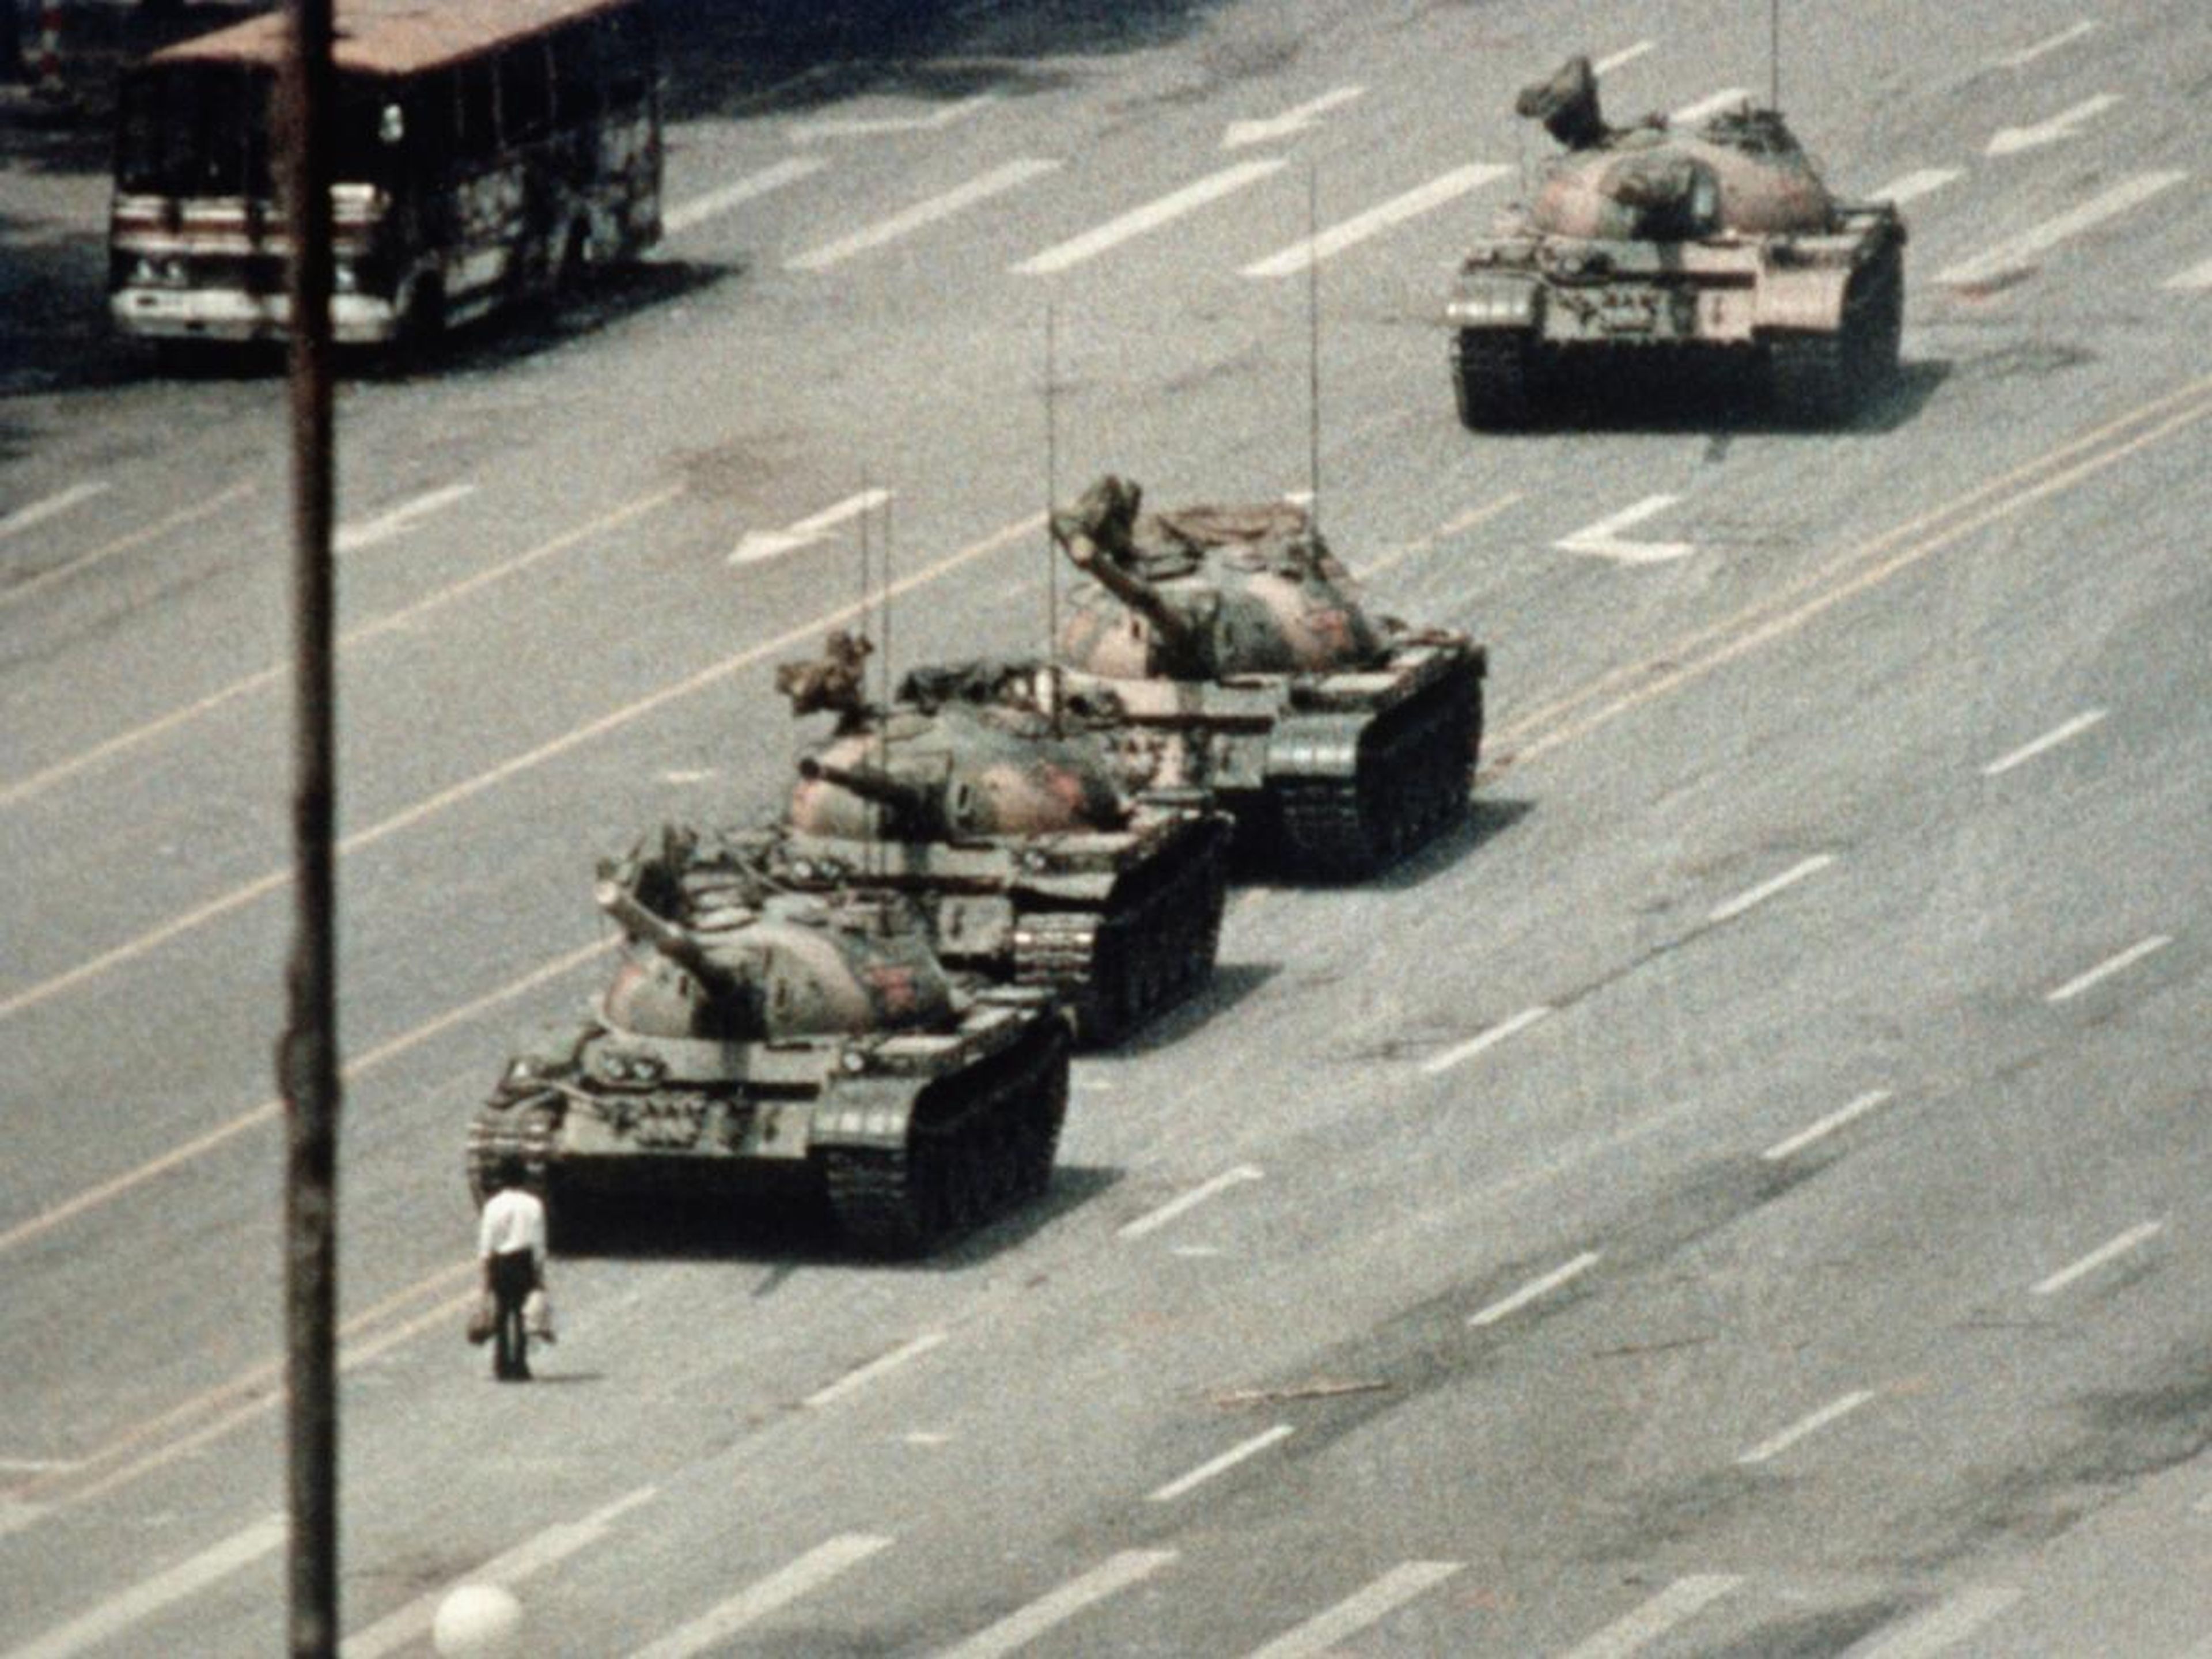 La Plaza de Tiananmen se consideraba una "demonización o distorsión de la historia local o de otros países" según las reglas de TikTok.